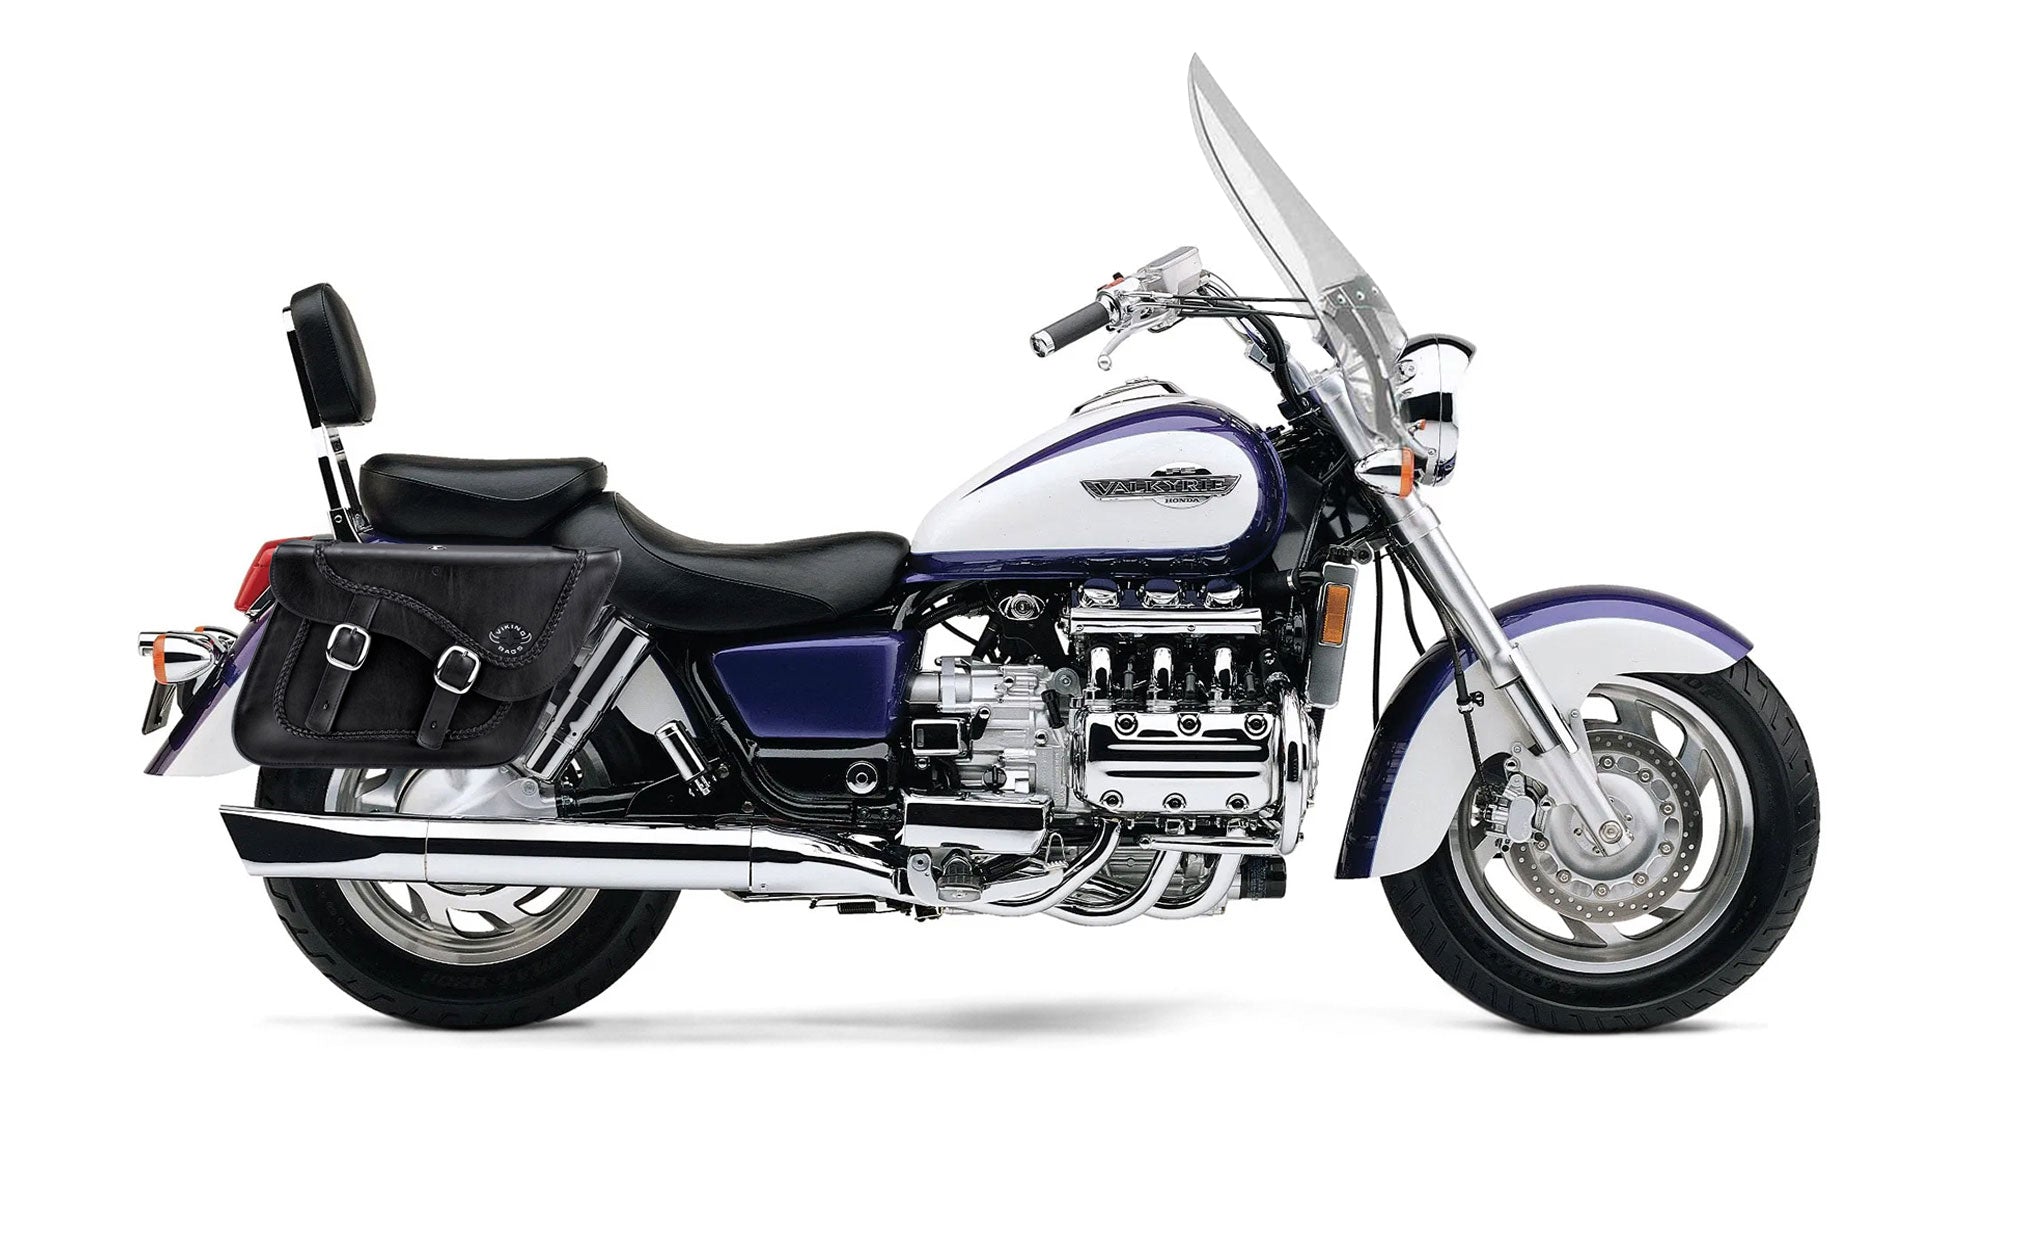 Viking Americano Honda Valkyrie 1500 Tourer Braided Large Leather Motorcycle Saddlebags on Bike Photo @expand